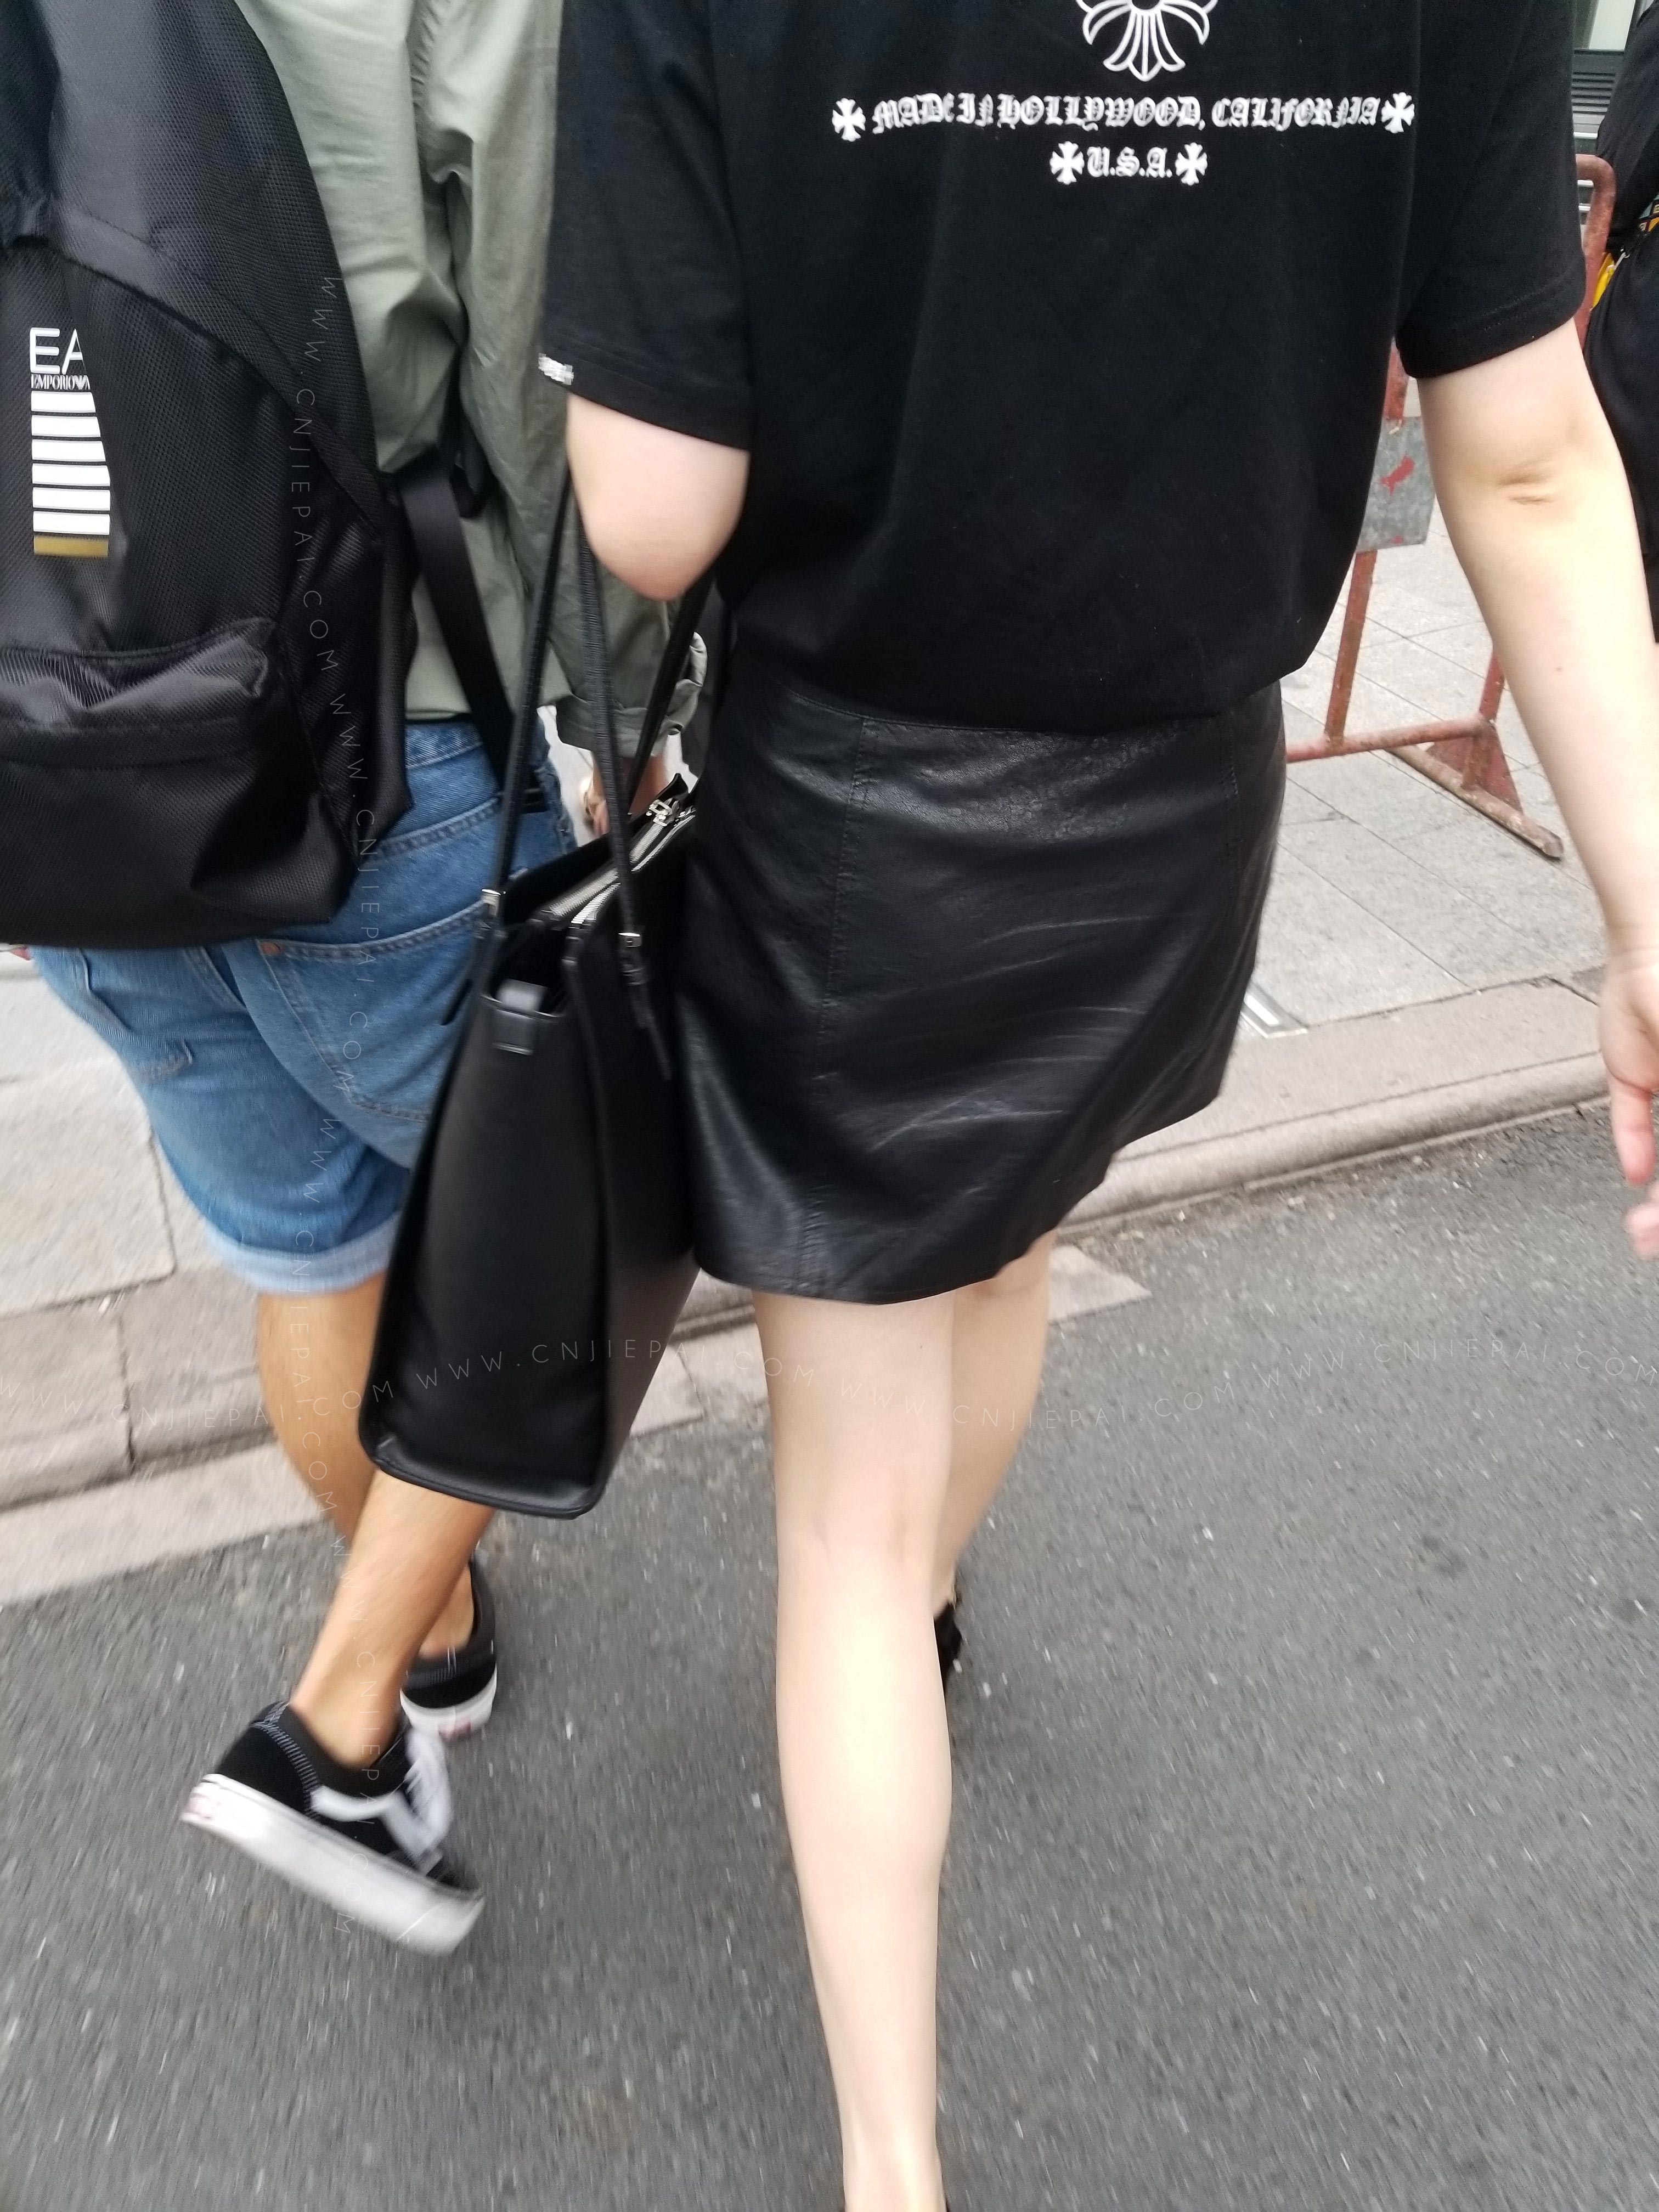 黑色短裙美女，性感的双腿 图2